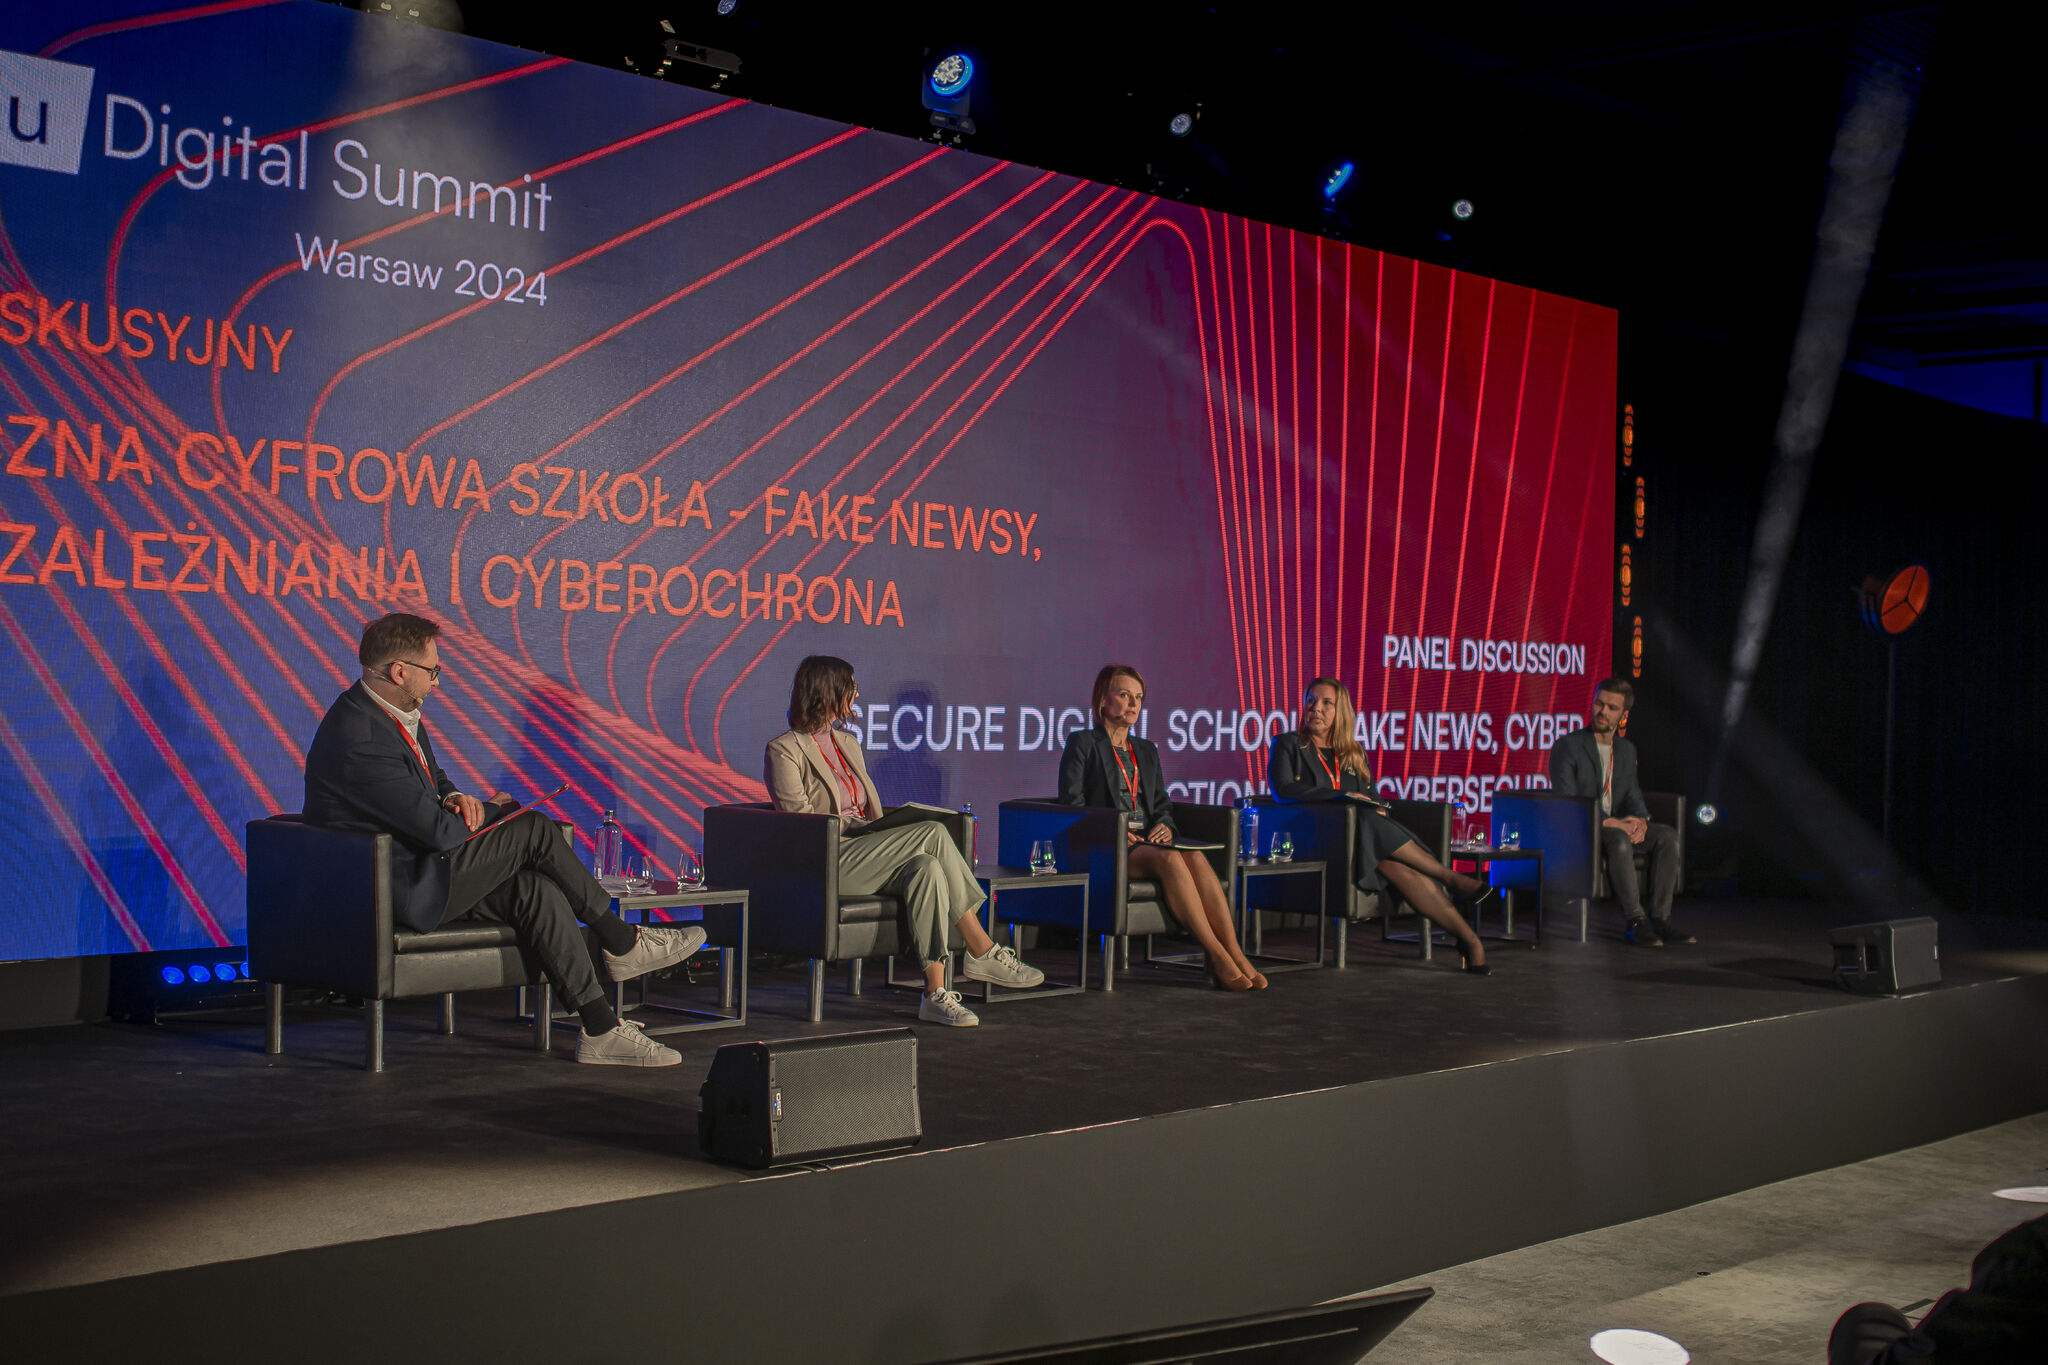 Zdjęcie przedstawiające ludzi na scenie. Siedzą na krzesłach, mają mikrofony. W tle ekran z wyświetlonym kolorowym obrazem i tekstem: Digital Summit, Warsaw 2024.